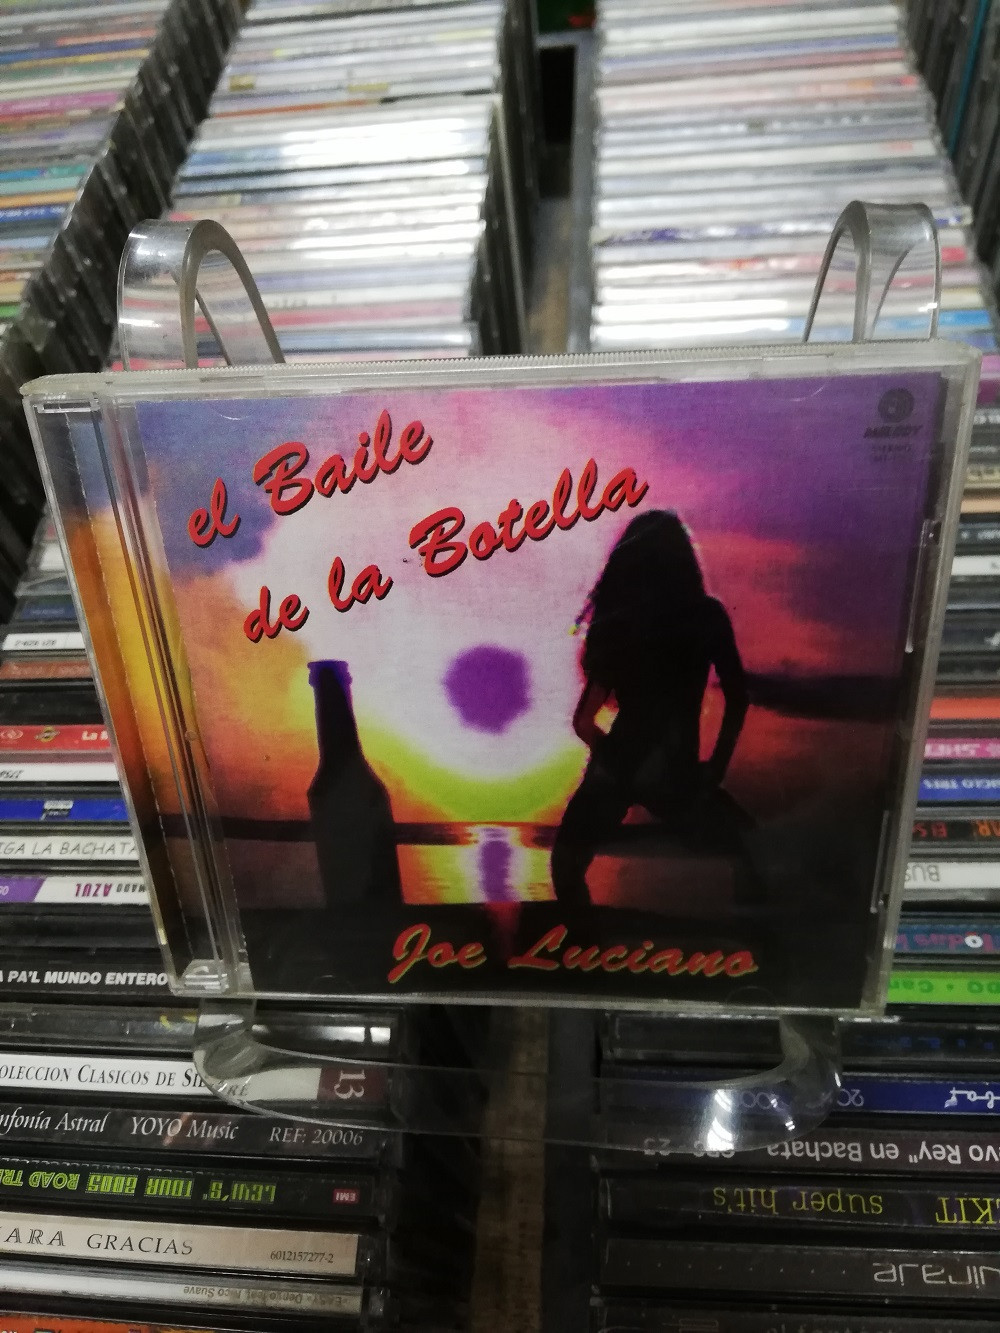 Imagen CD JOE LUCIANO - EL BAILE DE LA BOTELLA